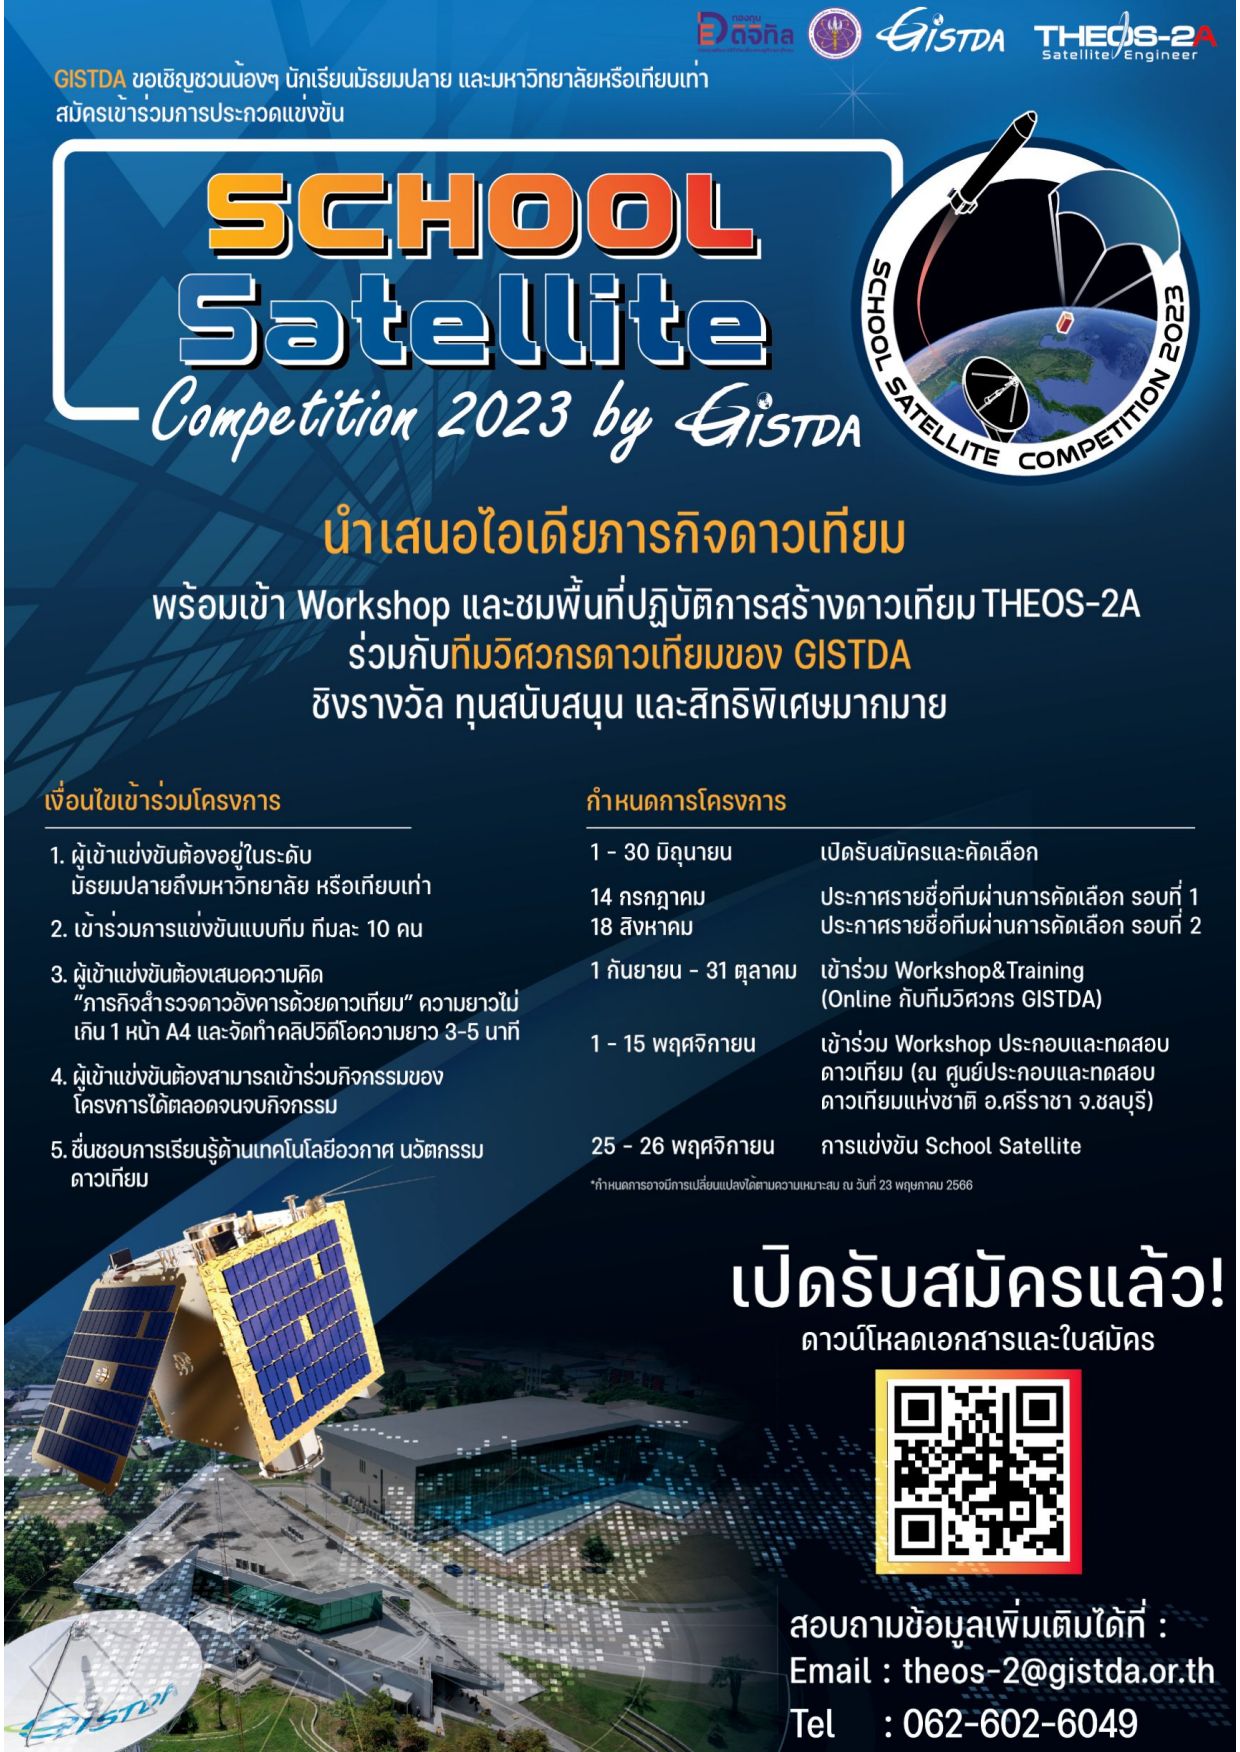 ขอเชิญนิสิตที่สนใจเข้าร่วมกิจกรรมแข่งขันโครงการดาวเทียม School Satellite นำเสนอไอเดียภารกิจดาวเทียม THEOS-2A